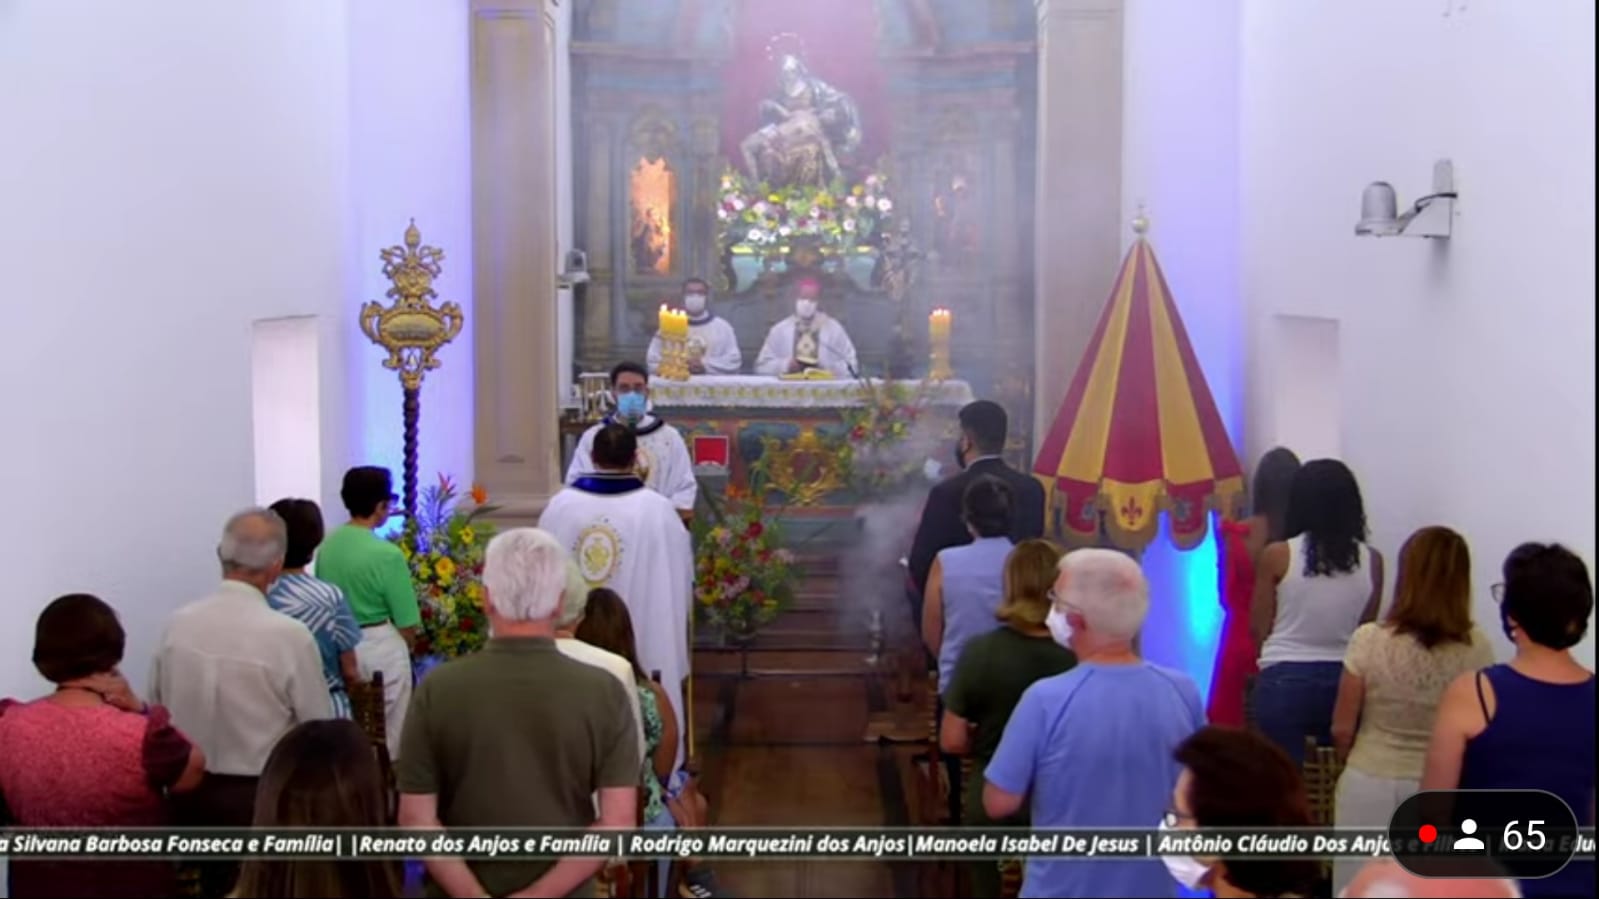 Dom Walmor preside Missa na Festa de Nossa Senhora da Piedade – Padroeira de Minas Gerais